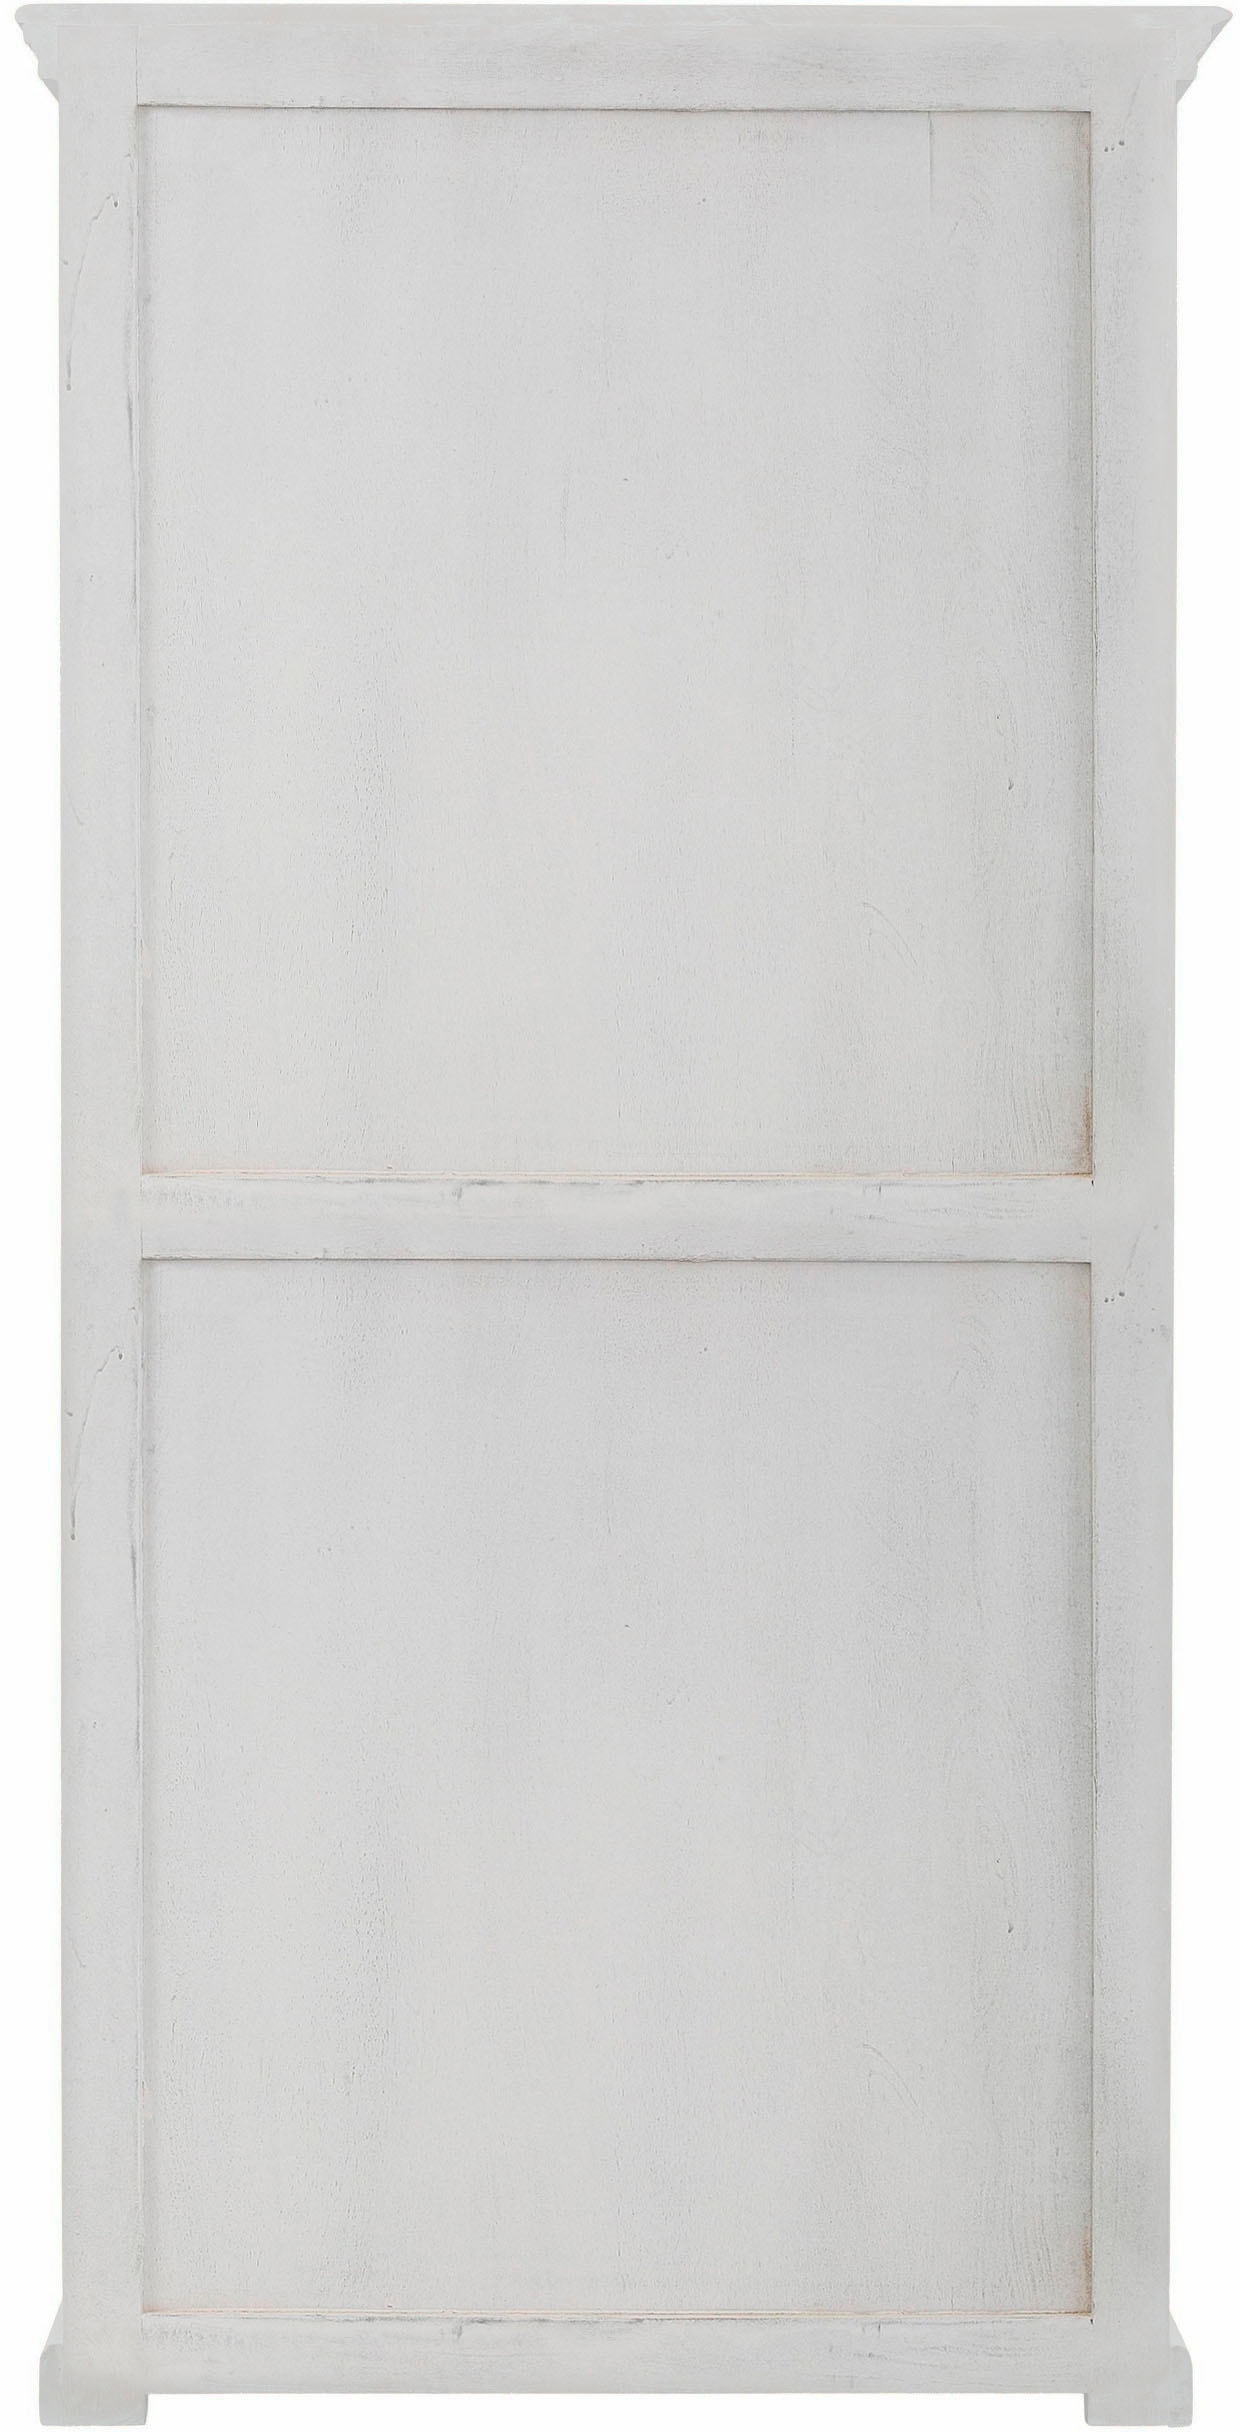 Home affaire Standregal »Malati«, mit dekorativen Fräsungen, Höhe 180 cm